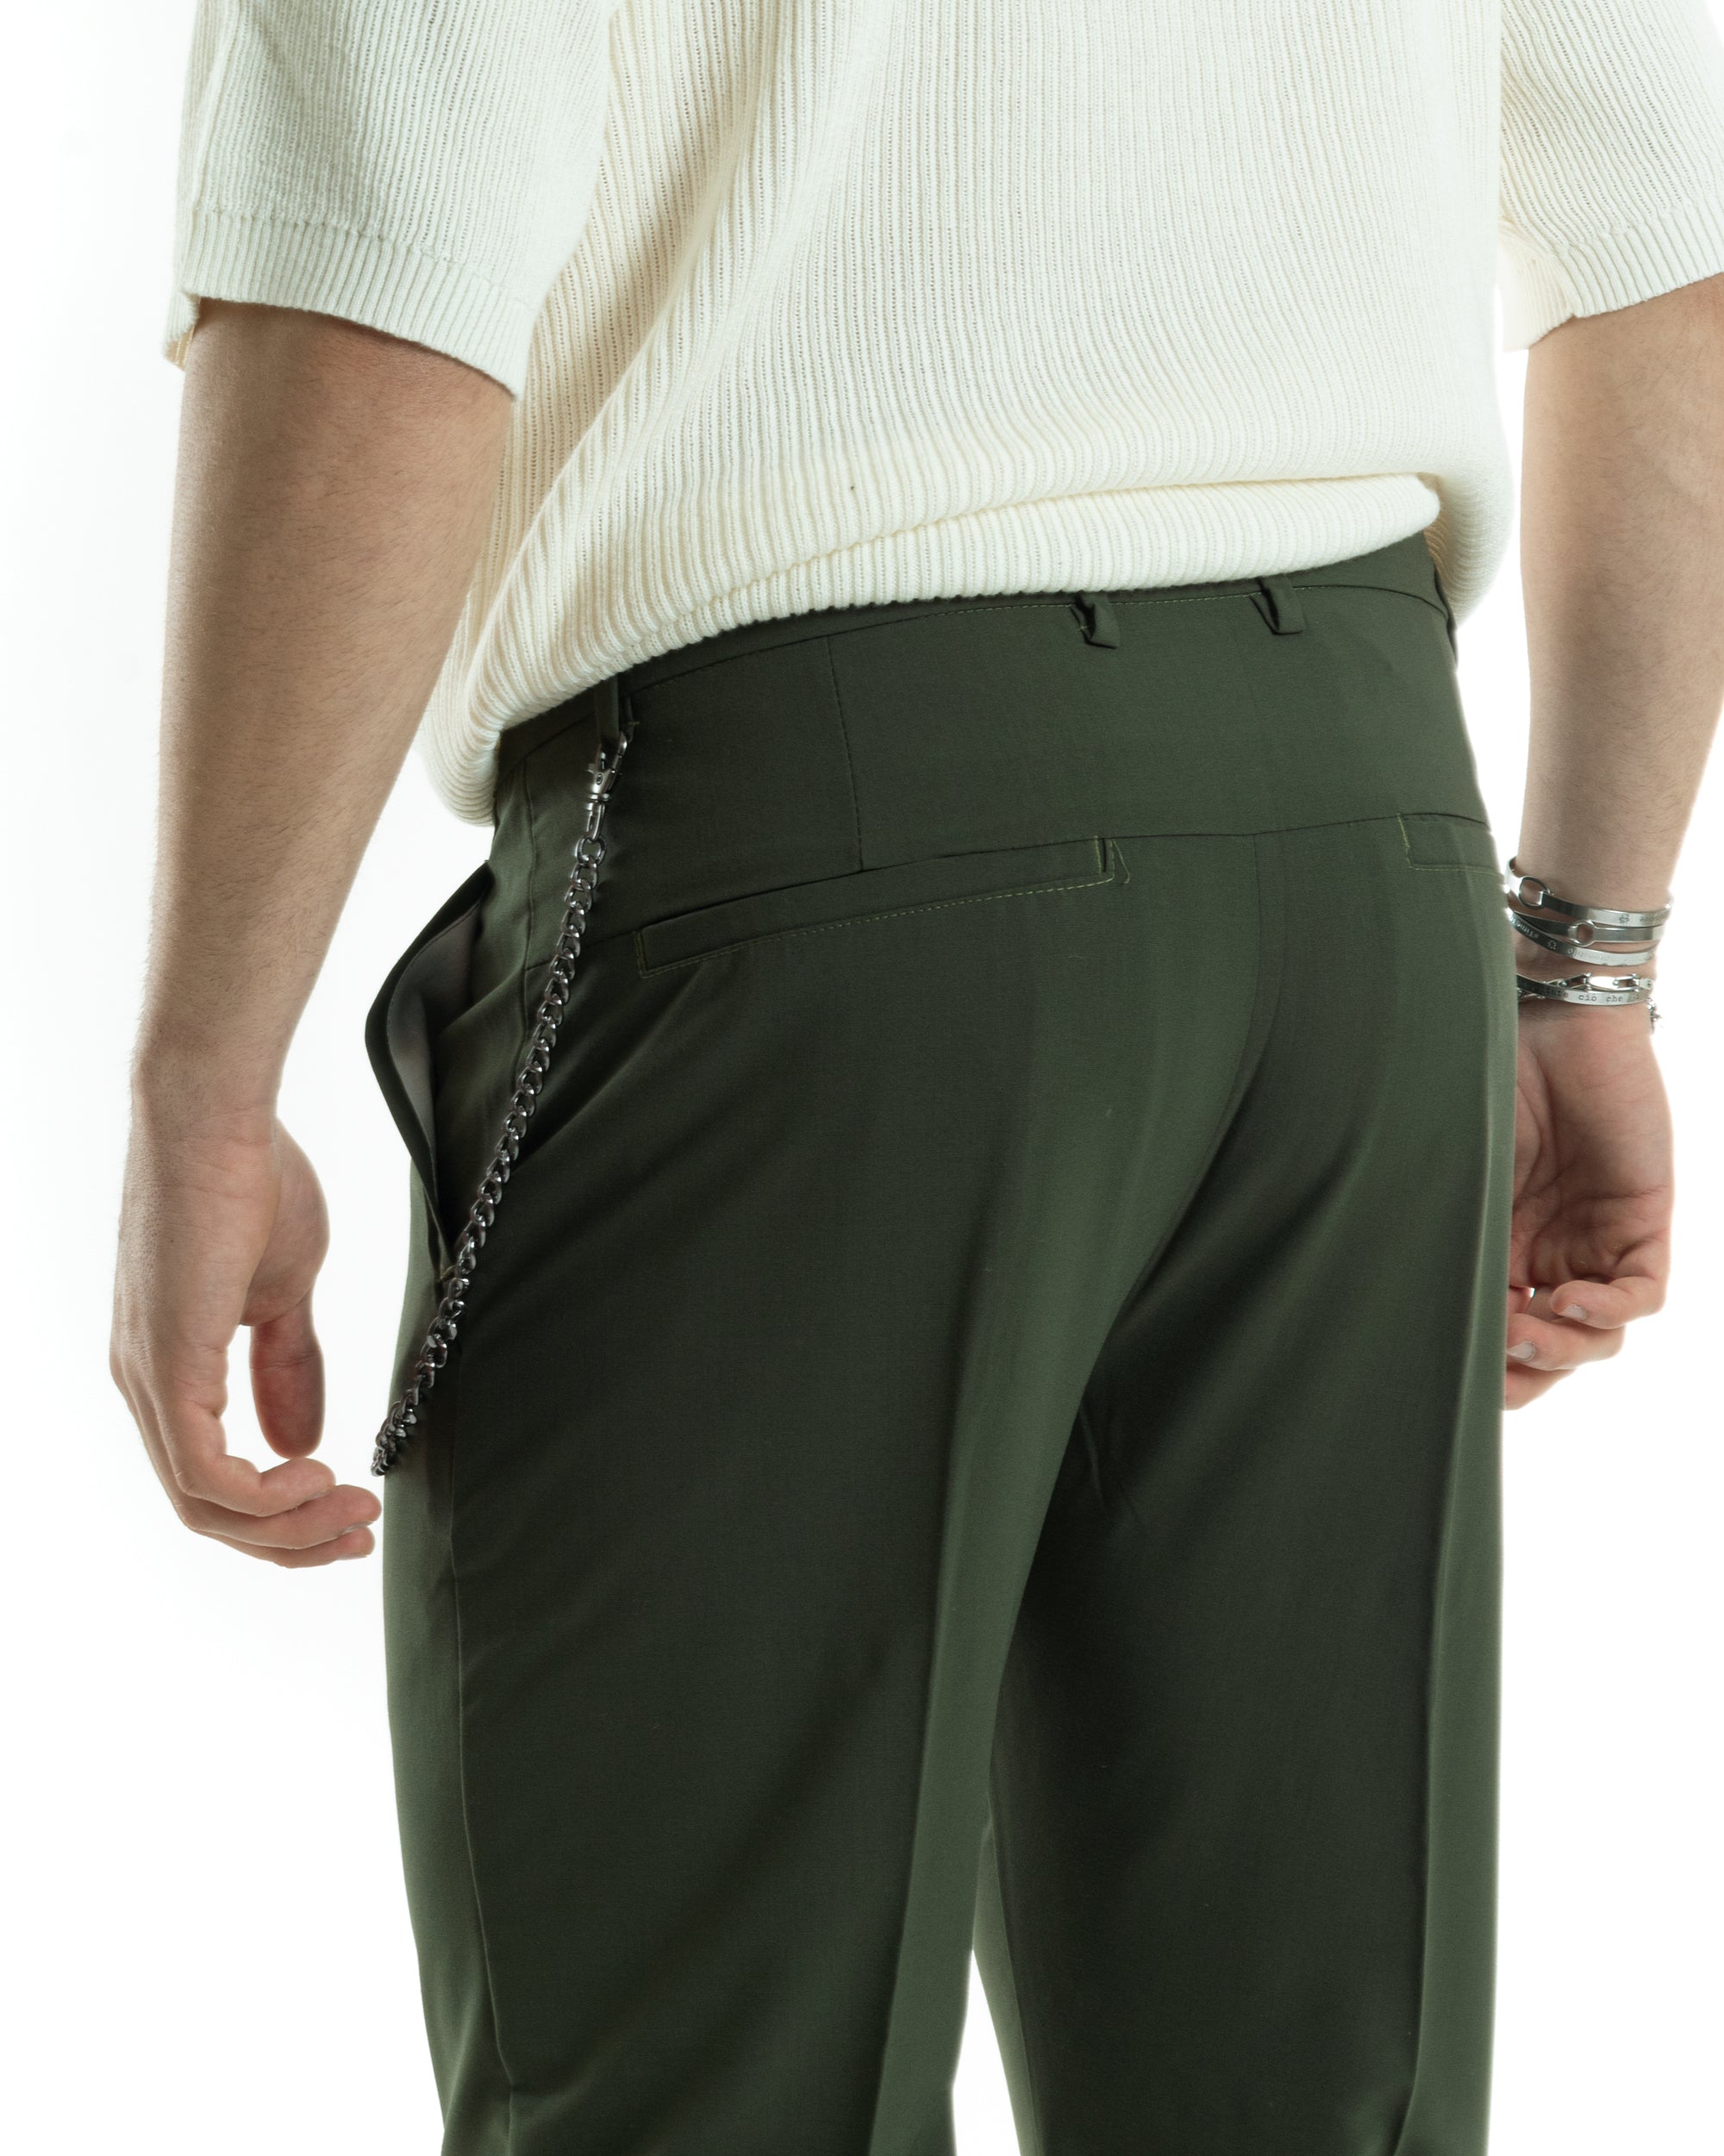 Pantaloni Uomo Viscosa Tasca America Verde Abbottonatura Allungata Capri Sartoriale GIOSAL-P6065A